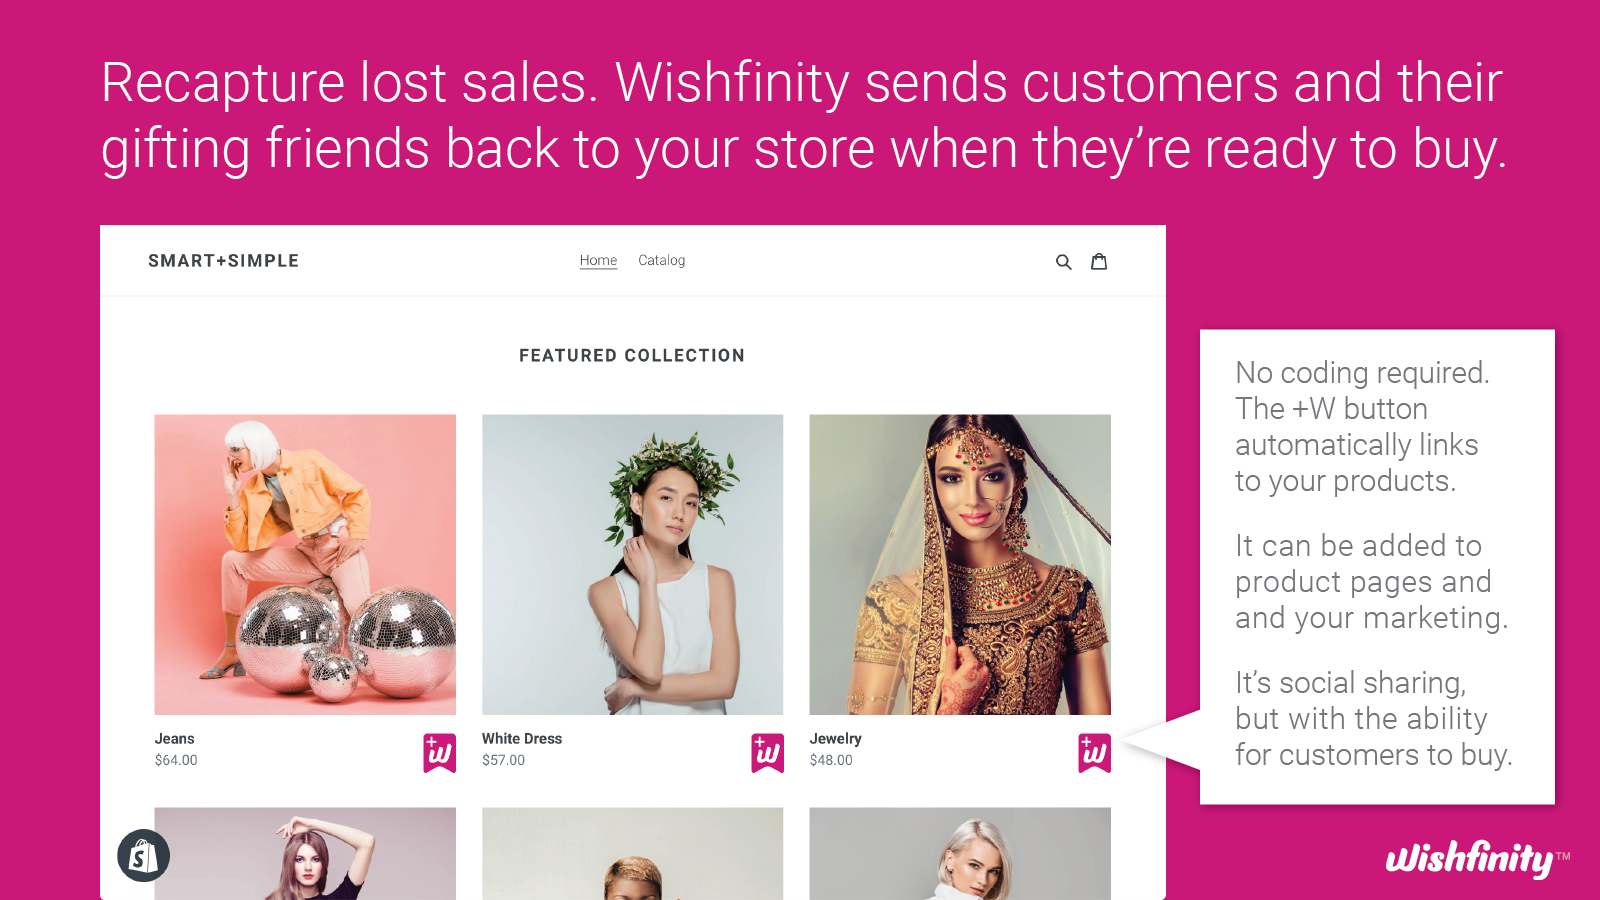 Wishfinity hjælper dig med at sælge til gavegivere og flere forbrugere